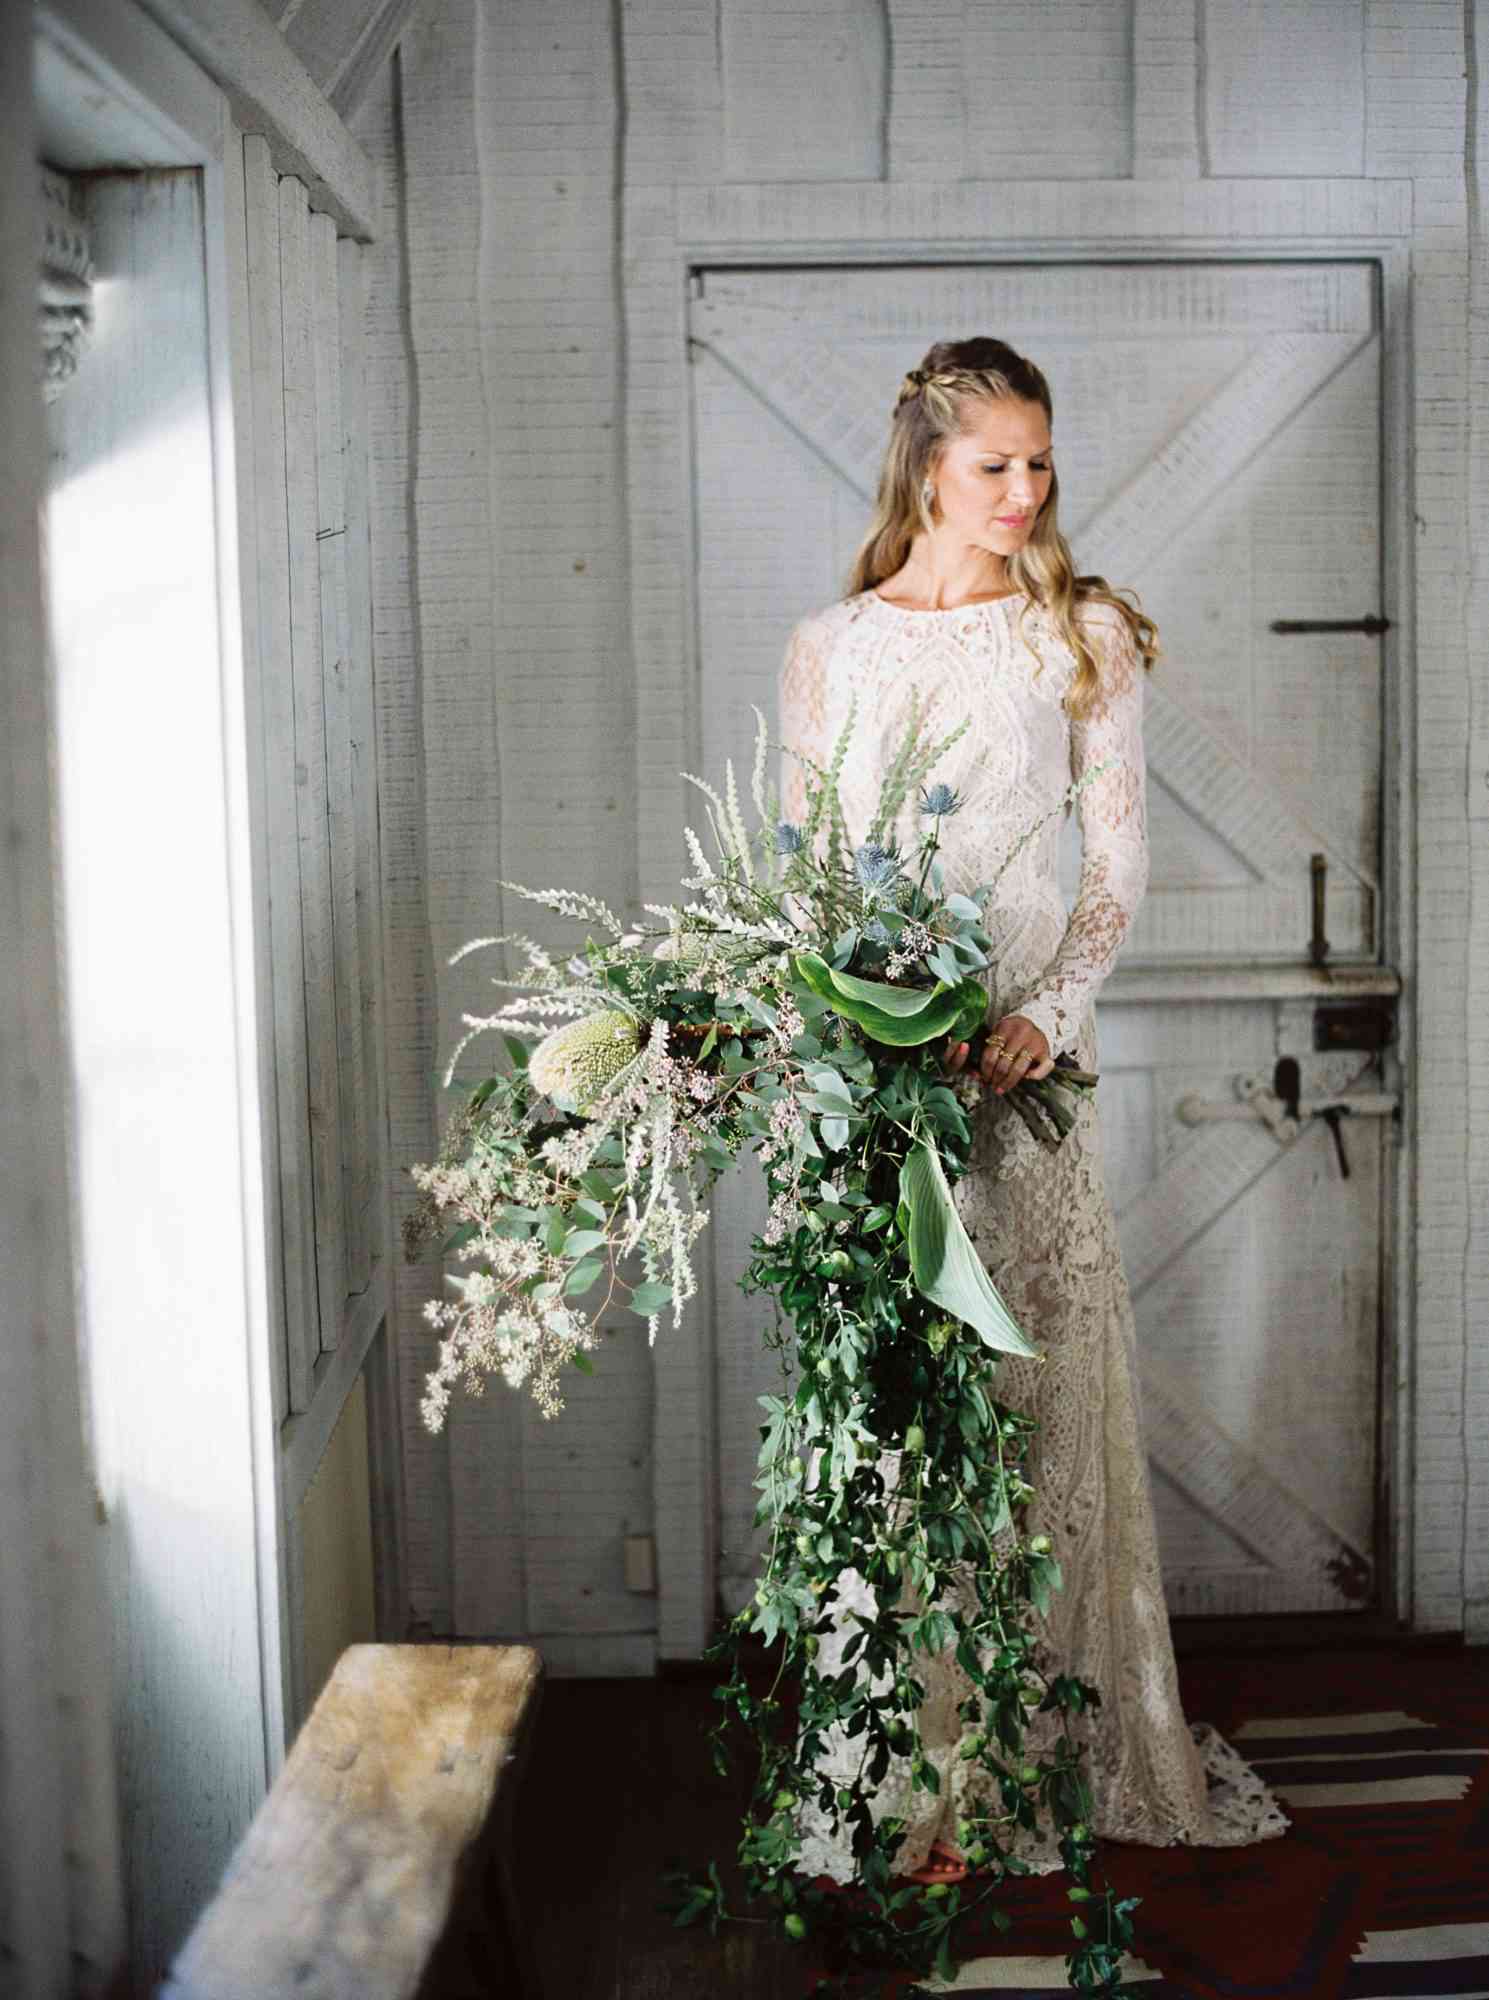 The Bridal Bouquet